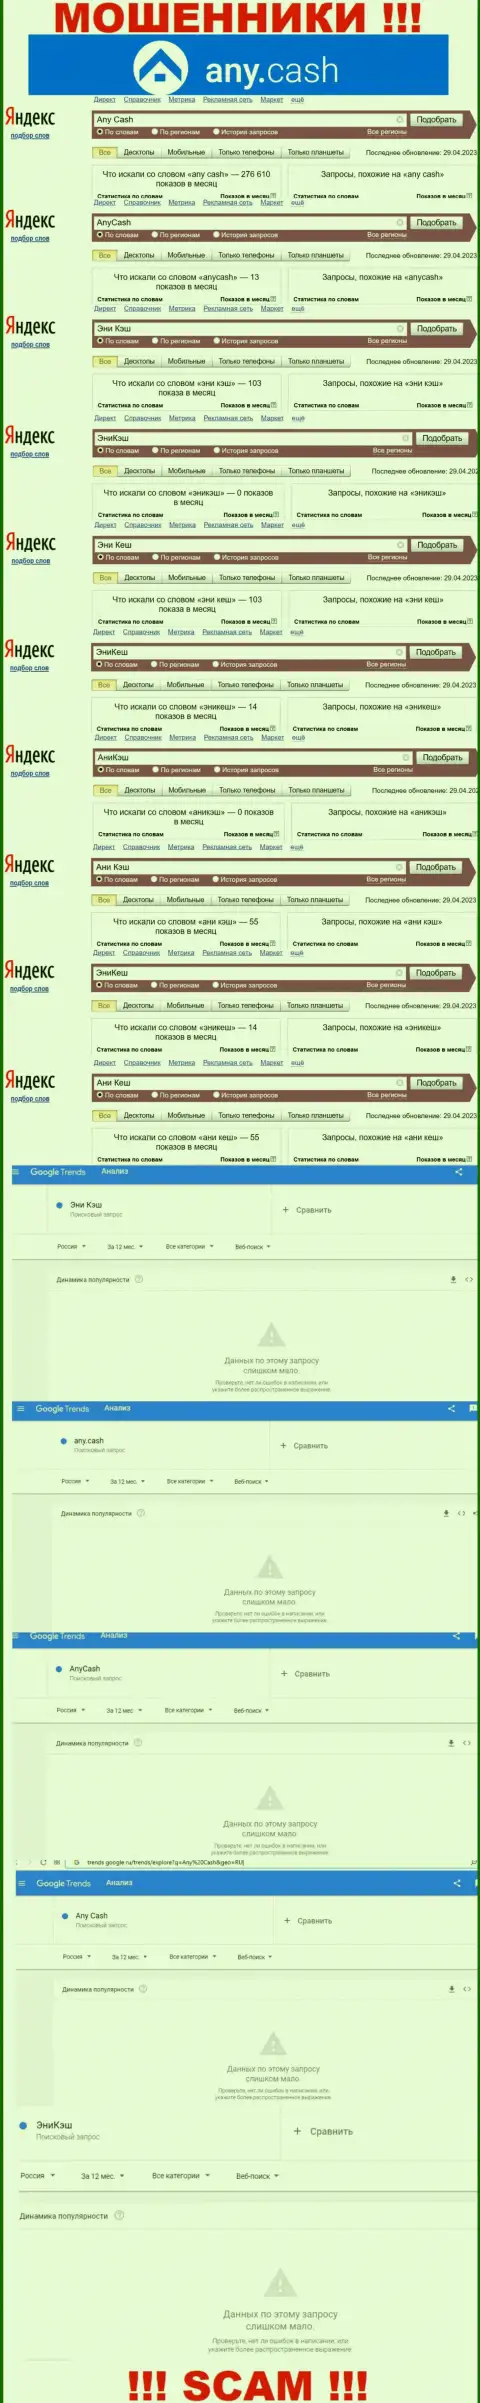 Скриншот статистических показателей онлайн запросов по жульнической организации ЭниКеш